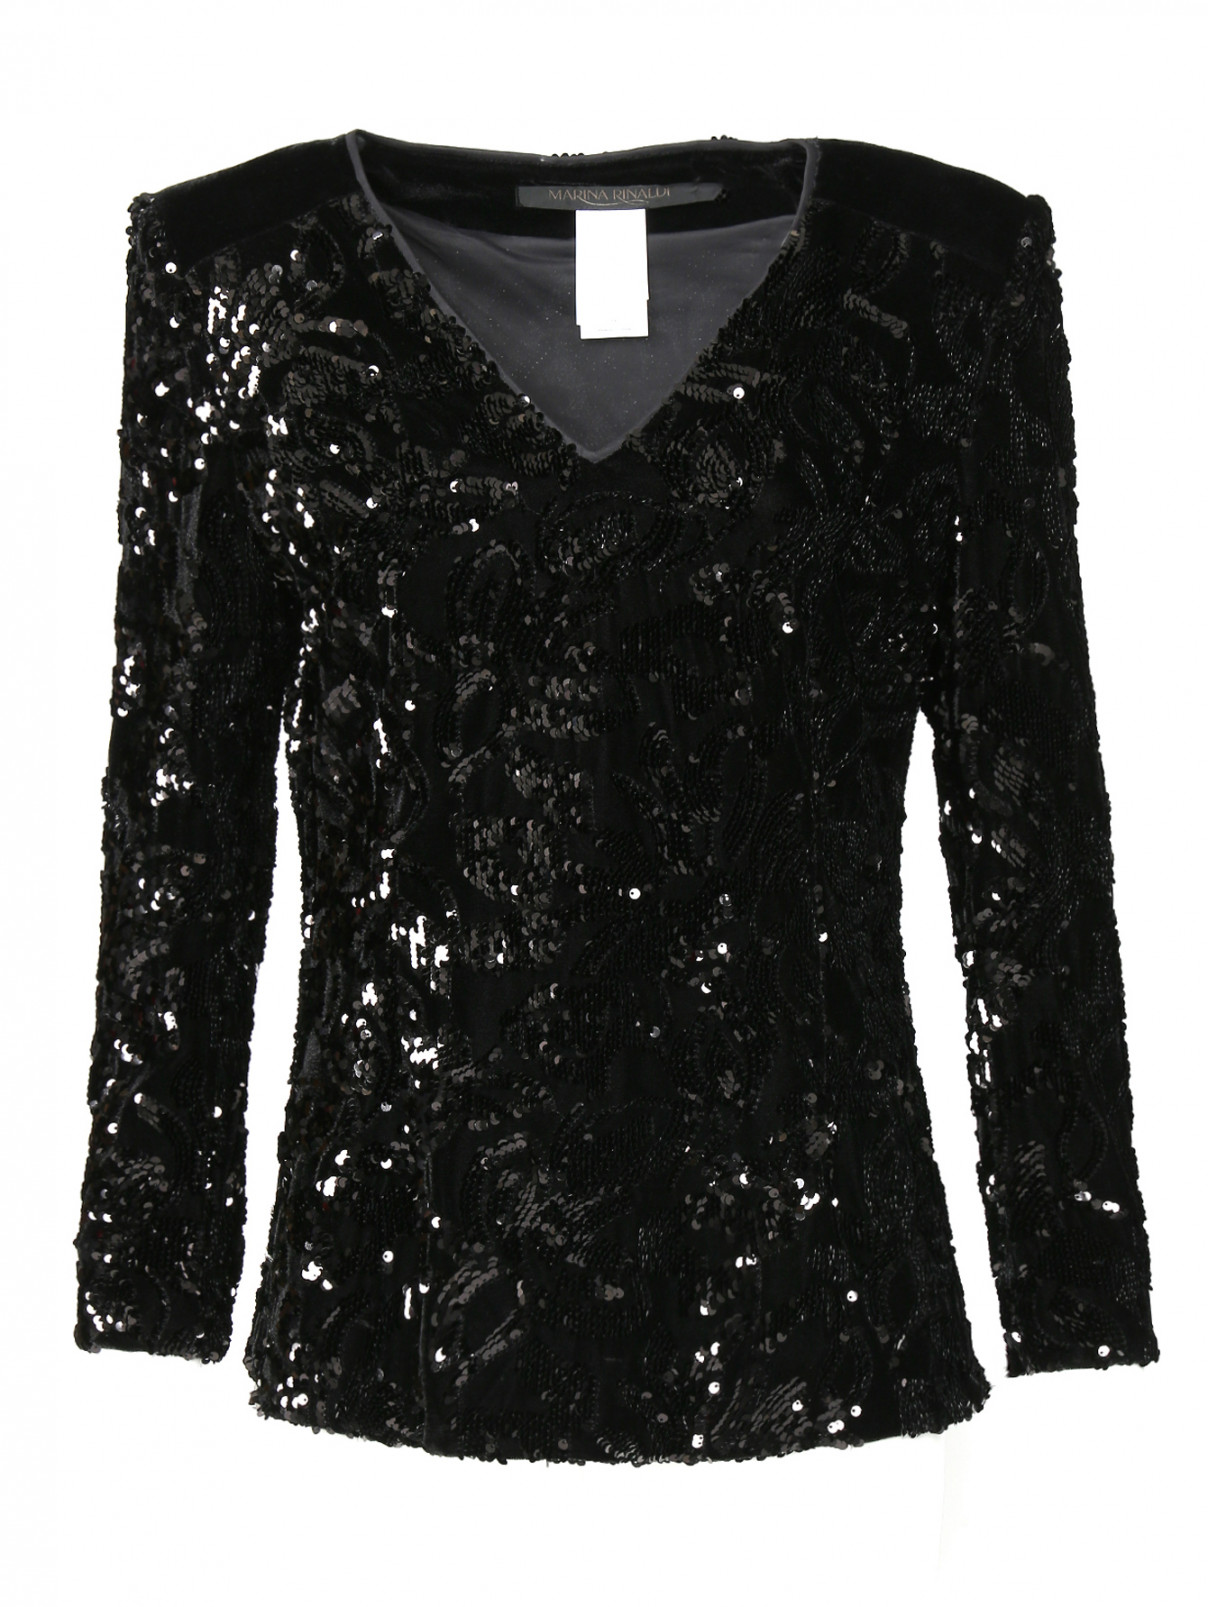 Блуза, декорированная пайетками Marina Rinaldi  –  Общий вид  – Цвет:  Черный